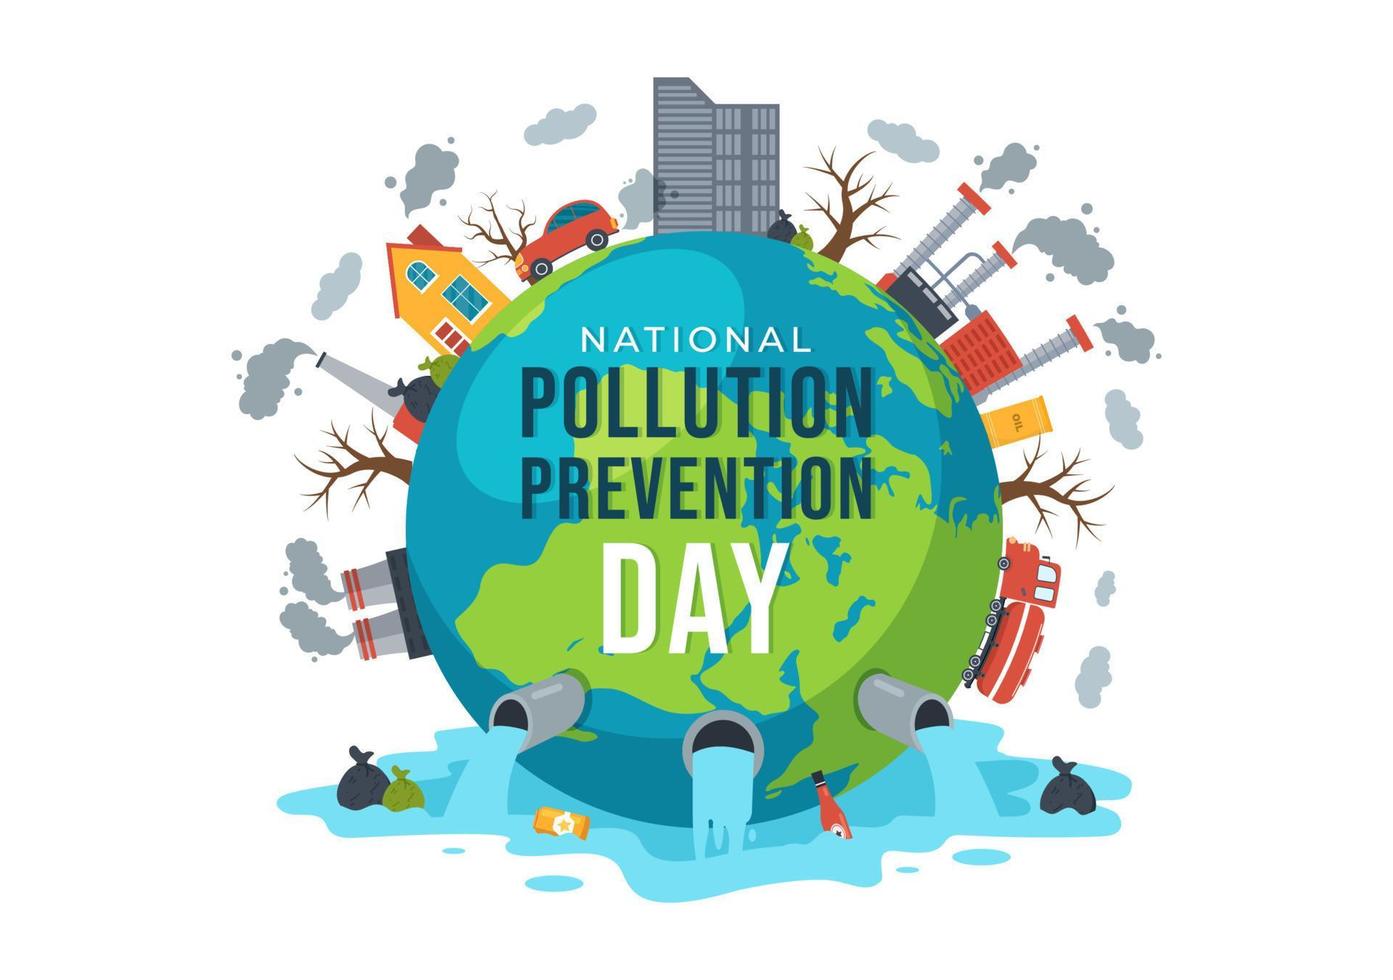 nazionale inquinamento prevenzione giorno per consapevolezza campagna di fabbrica, foresta o veicolo i problemi nel modello mano disegnato cartone animato piatto illustrazione vettore